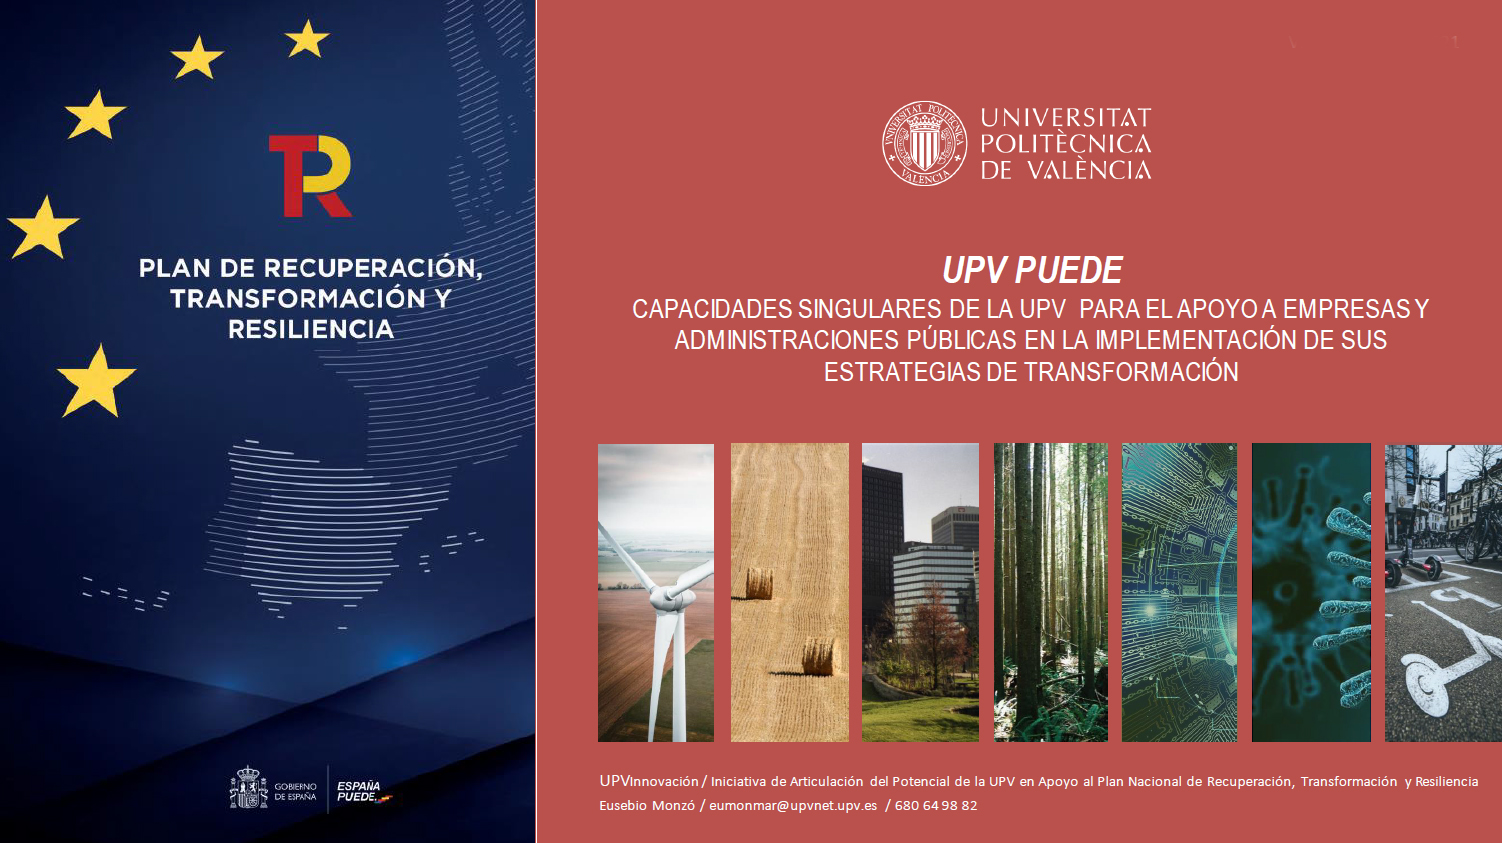 Capacidades singulares de la UPV para el apoyo a empresas y administraciones públicas en la implementación de sus estrategias de transformación https://innovacion.upv.es/wp-content/uploads/2021/06/UPV-PUEDE-_Capacidades-UPV-en-ESPANA-PUEDE-1.pdf